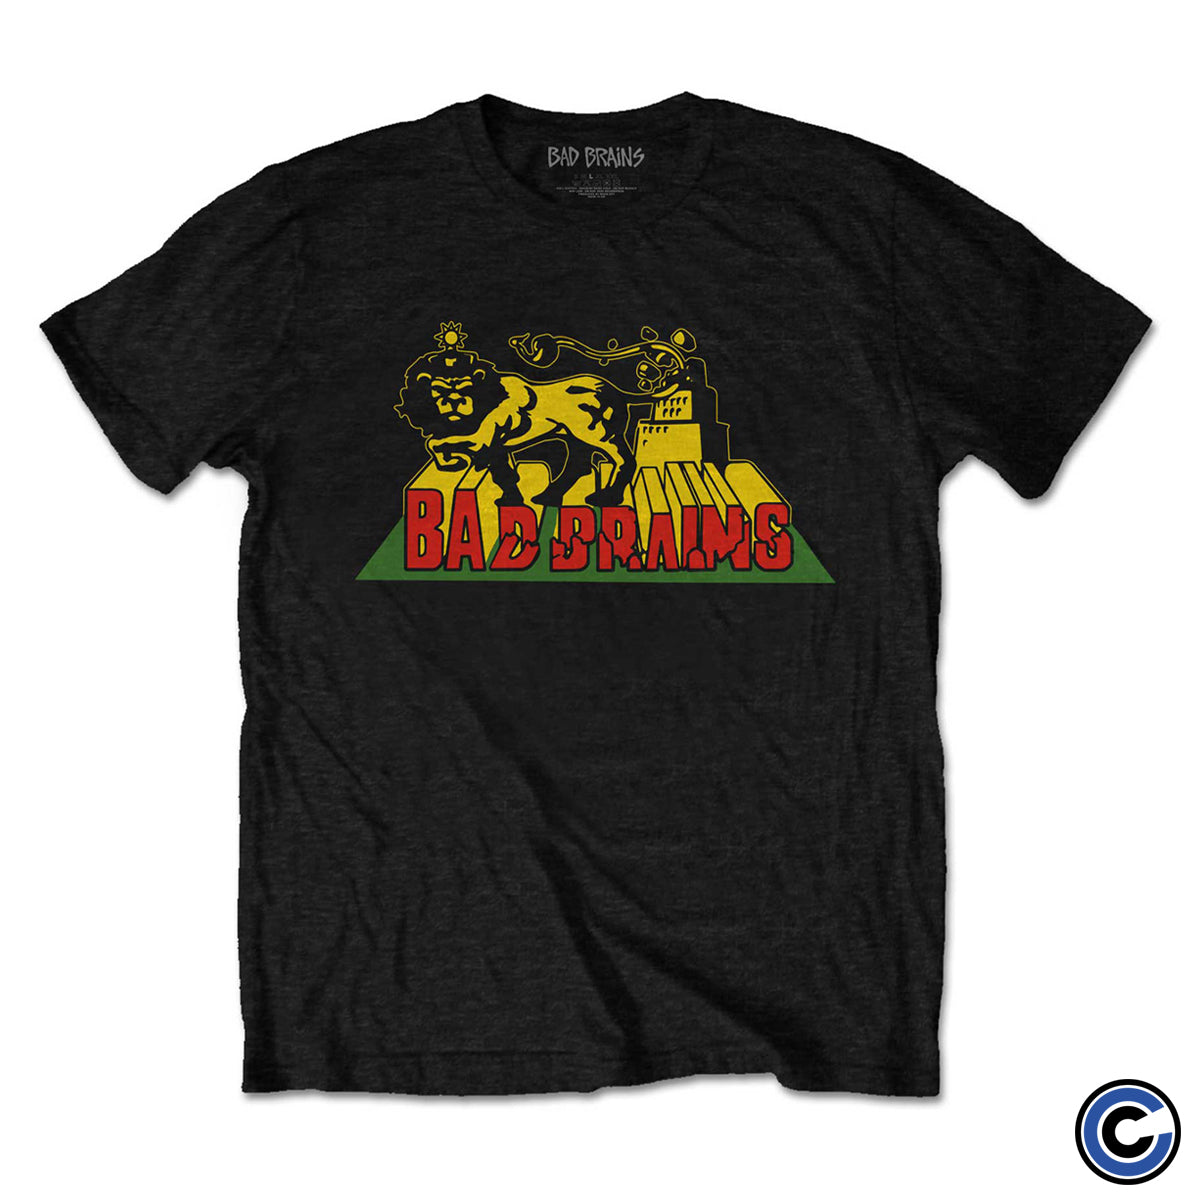 Bad Brains "Lion Crush" Shirt